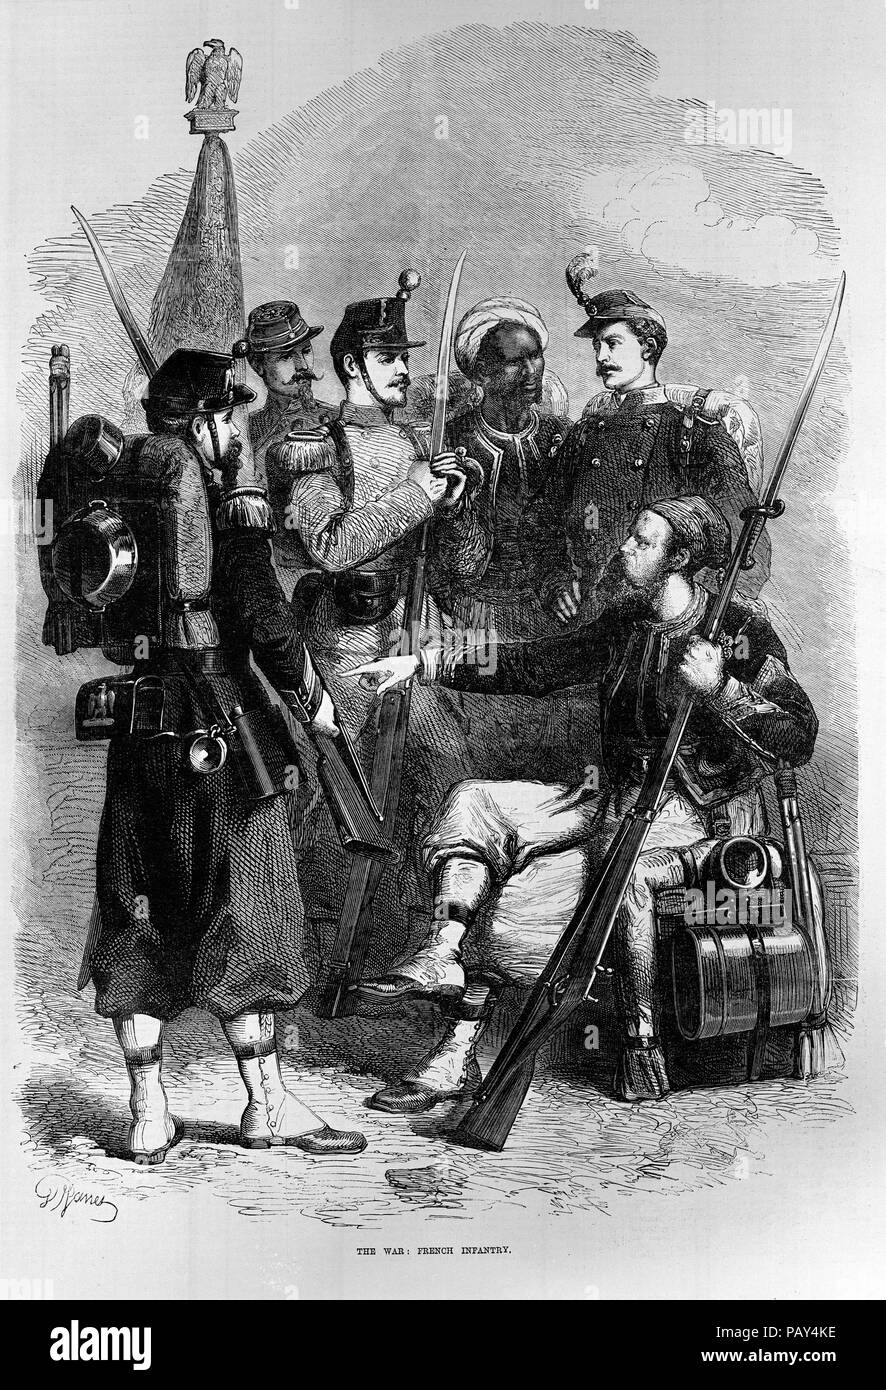 Gravur berechtigt, Französische Infanterie aus dem Deutsch-Französischen Krieg. Von der Illustrated London News (3. September 1870), S. 236 Stockfoto